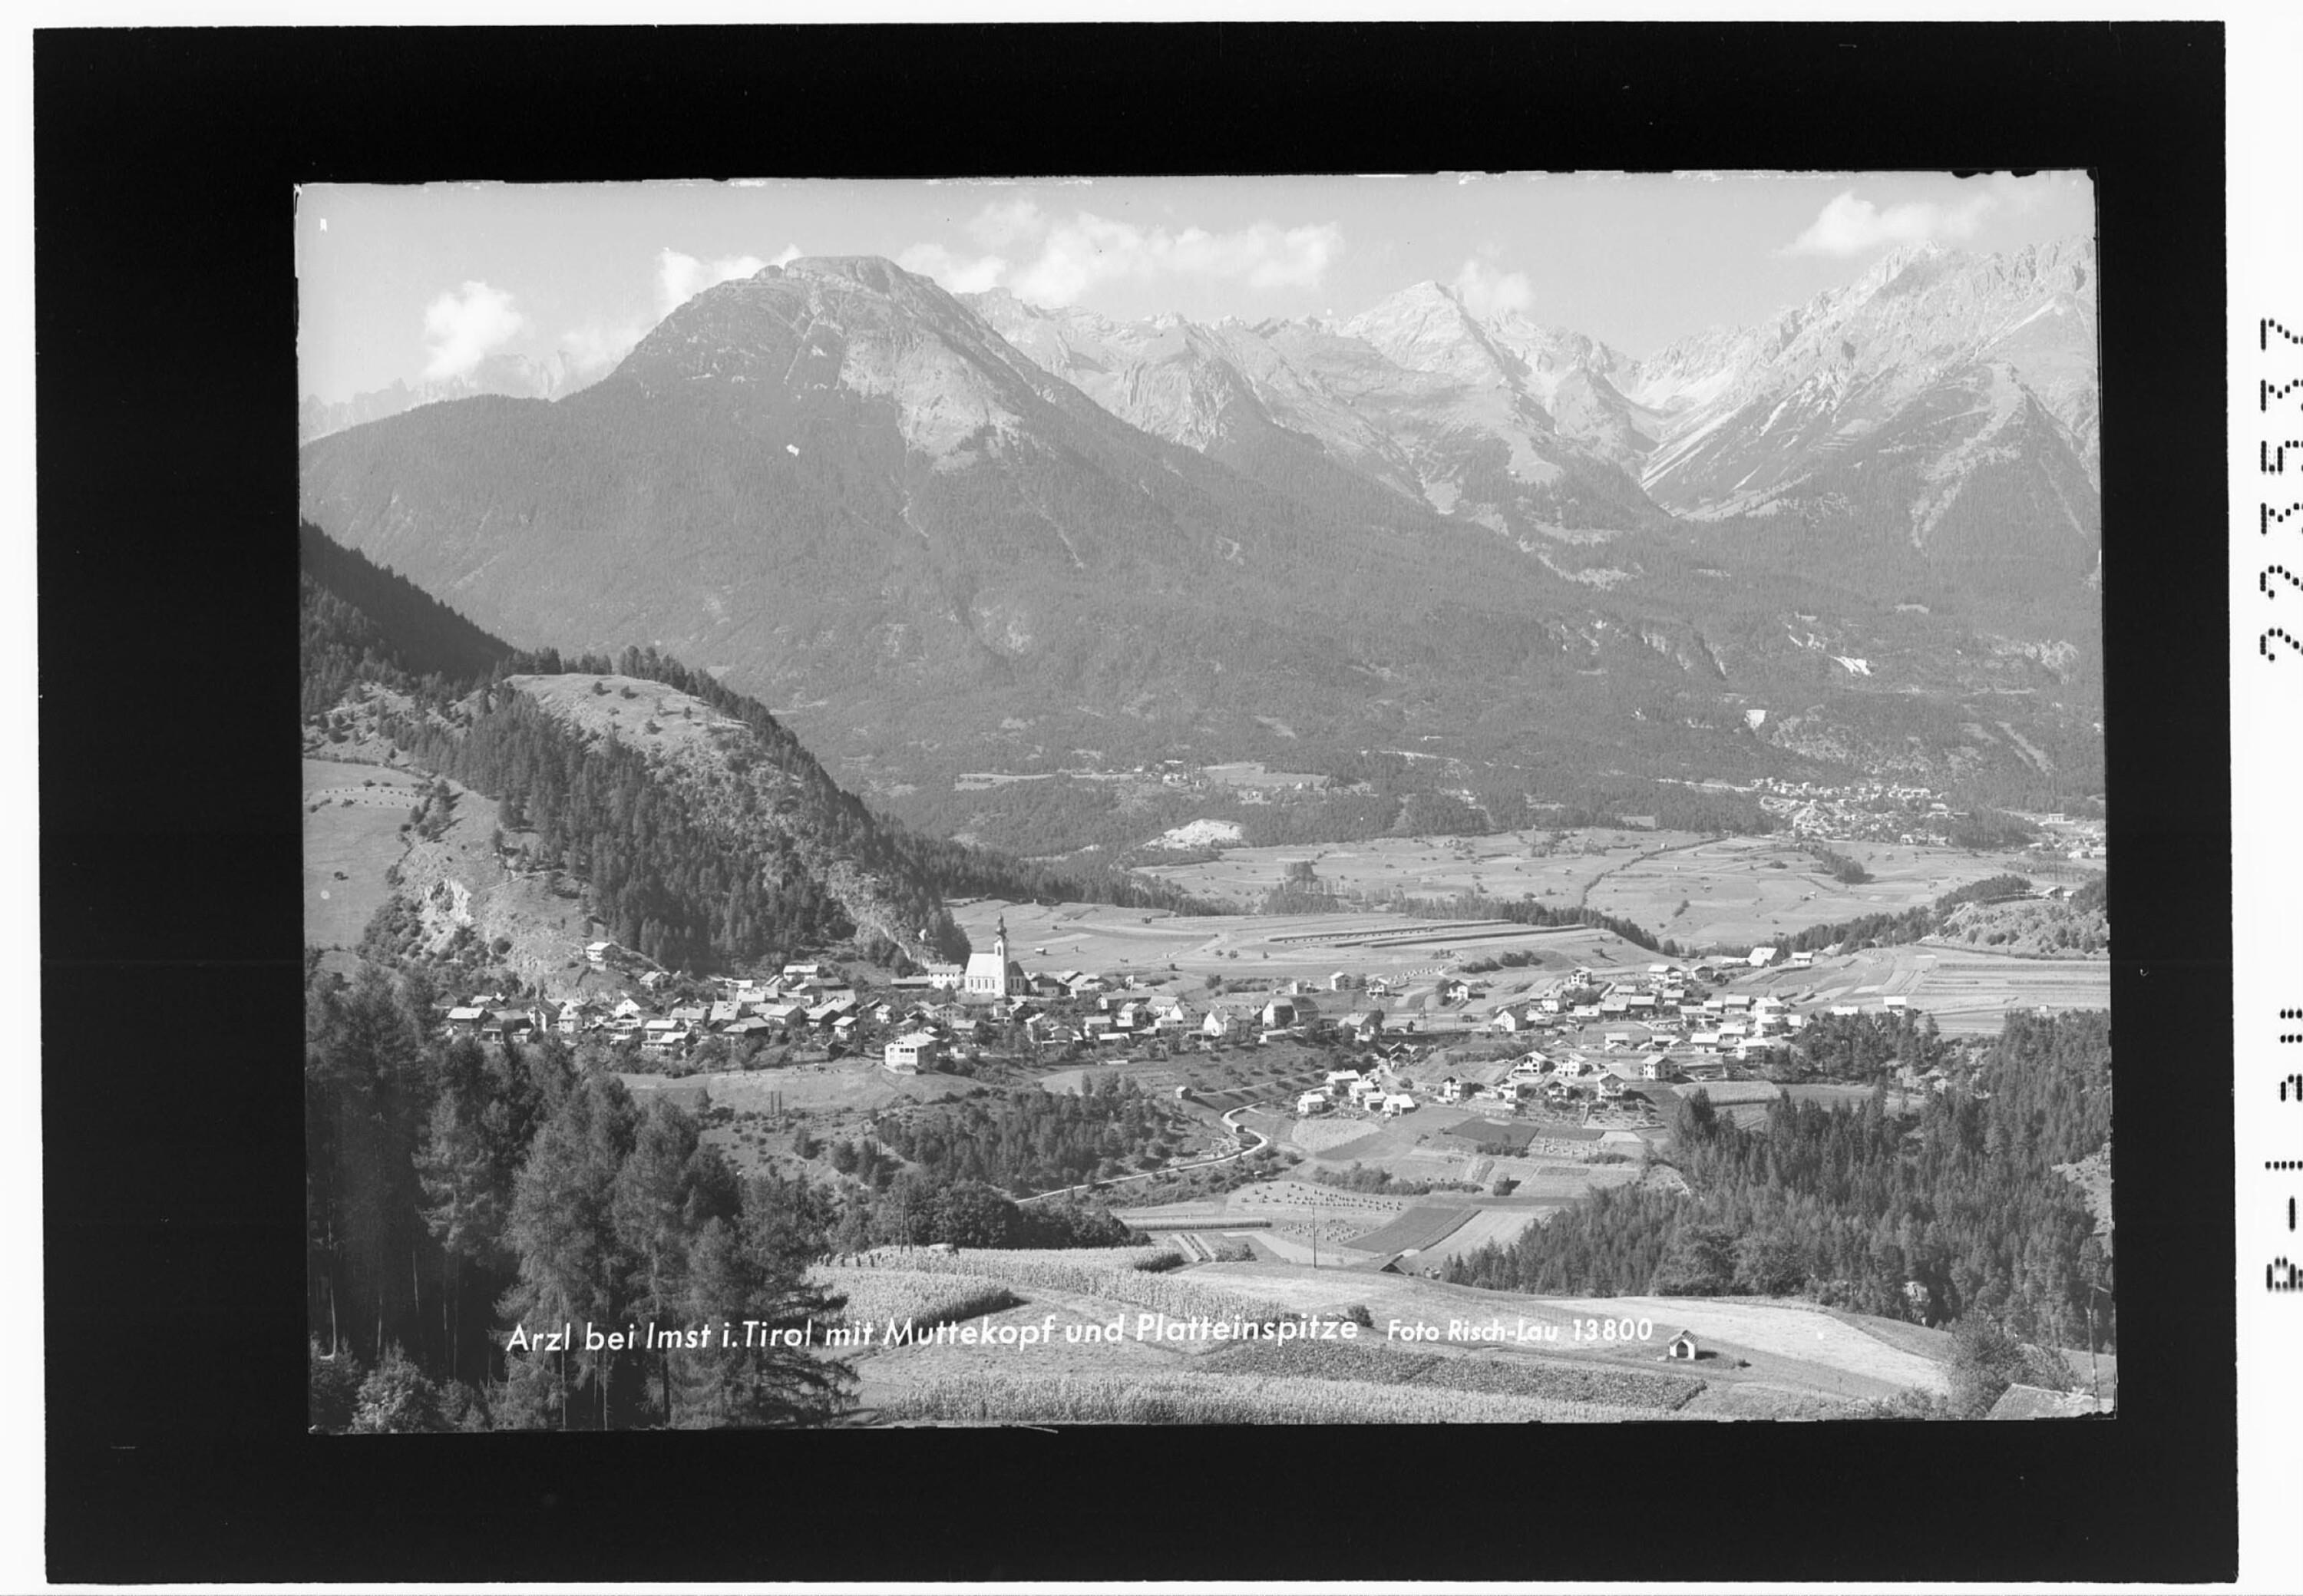 Arzl bei Imst in Tirol mit Muttekopf und Platteinspitze></div>


    <hr>
    <div class=